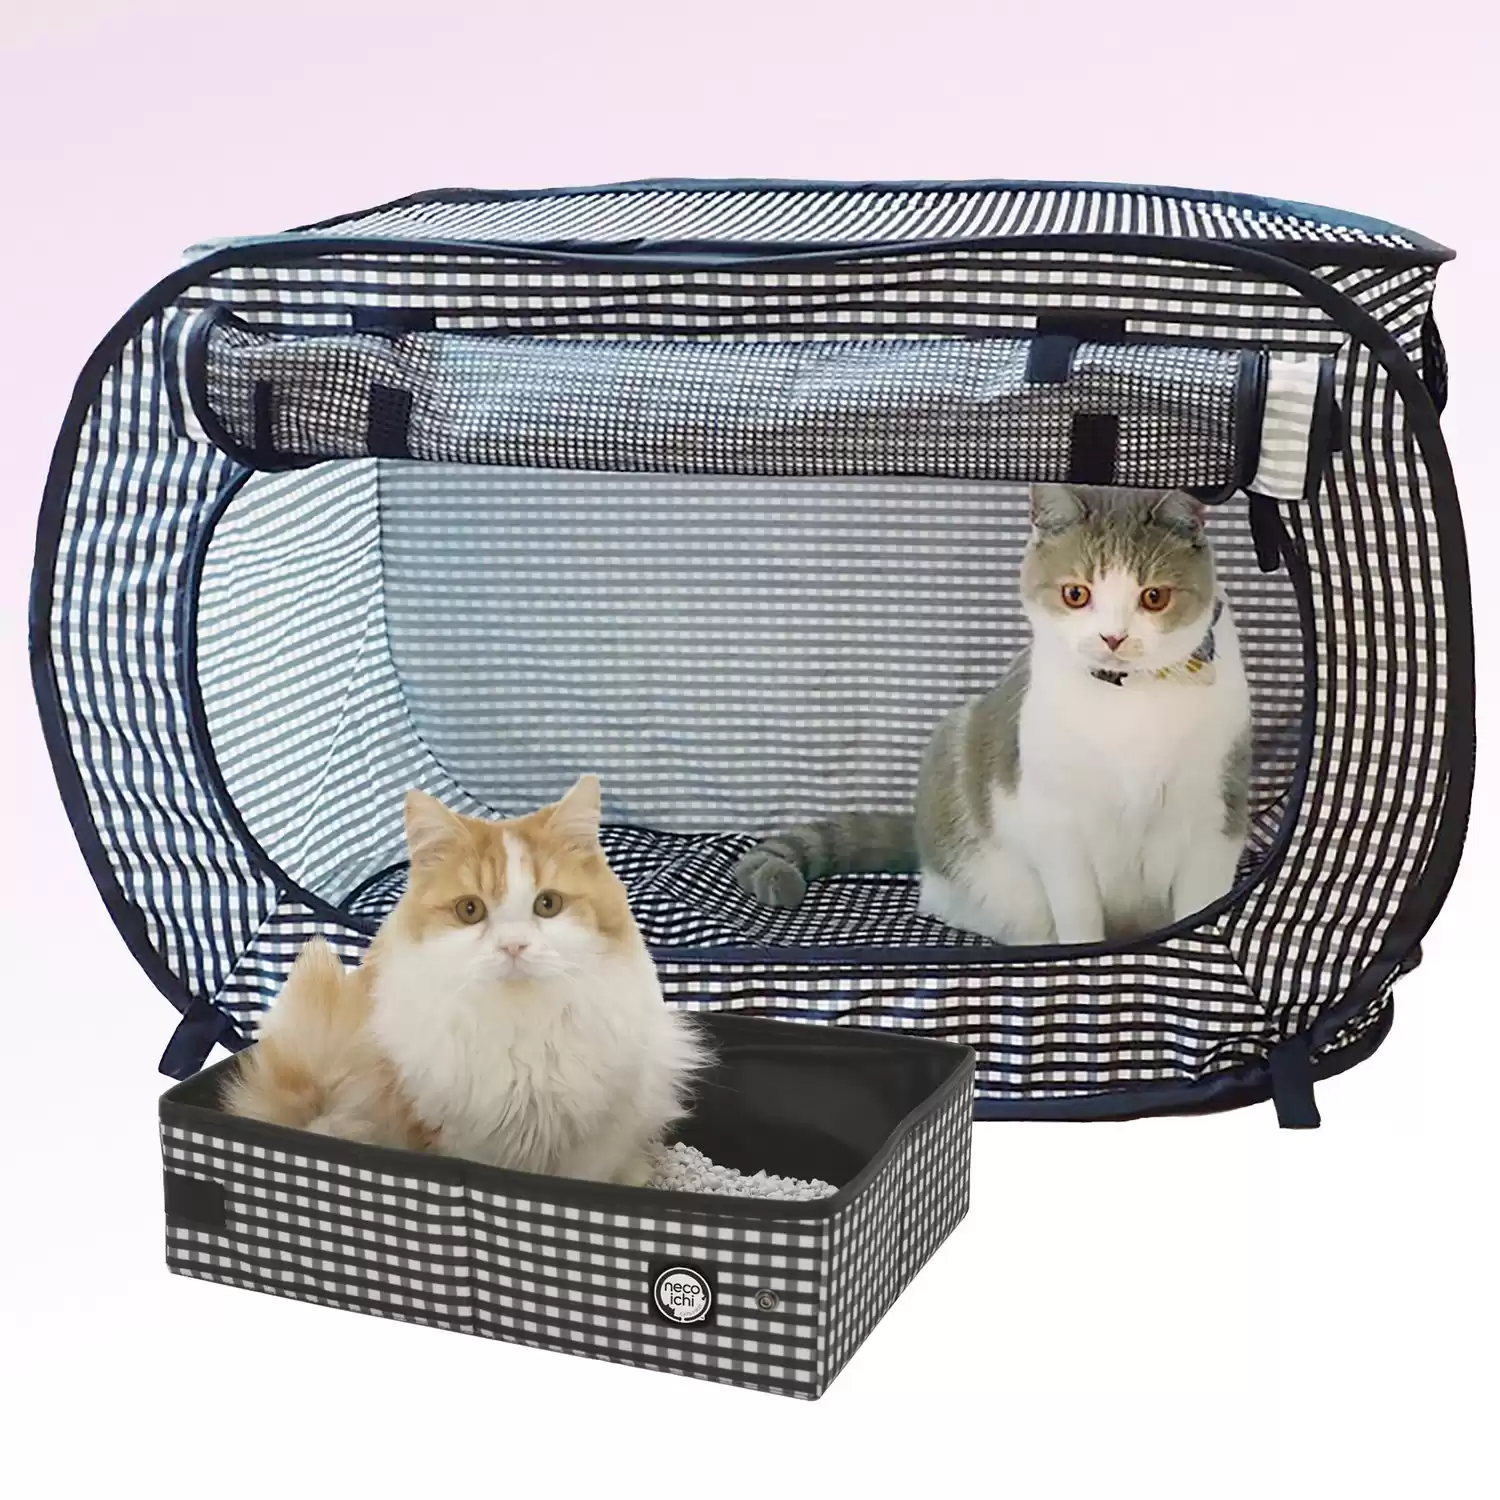 Necoichi Portable Cat Cage & Litter Box